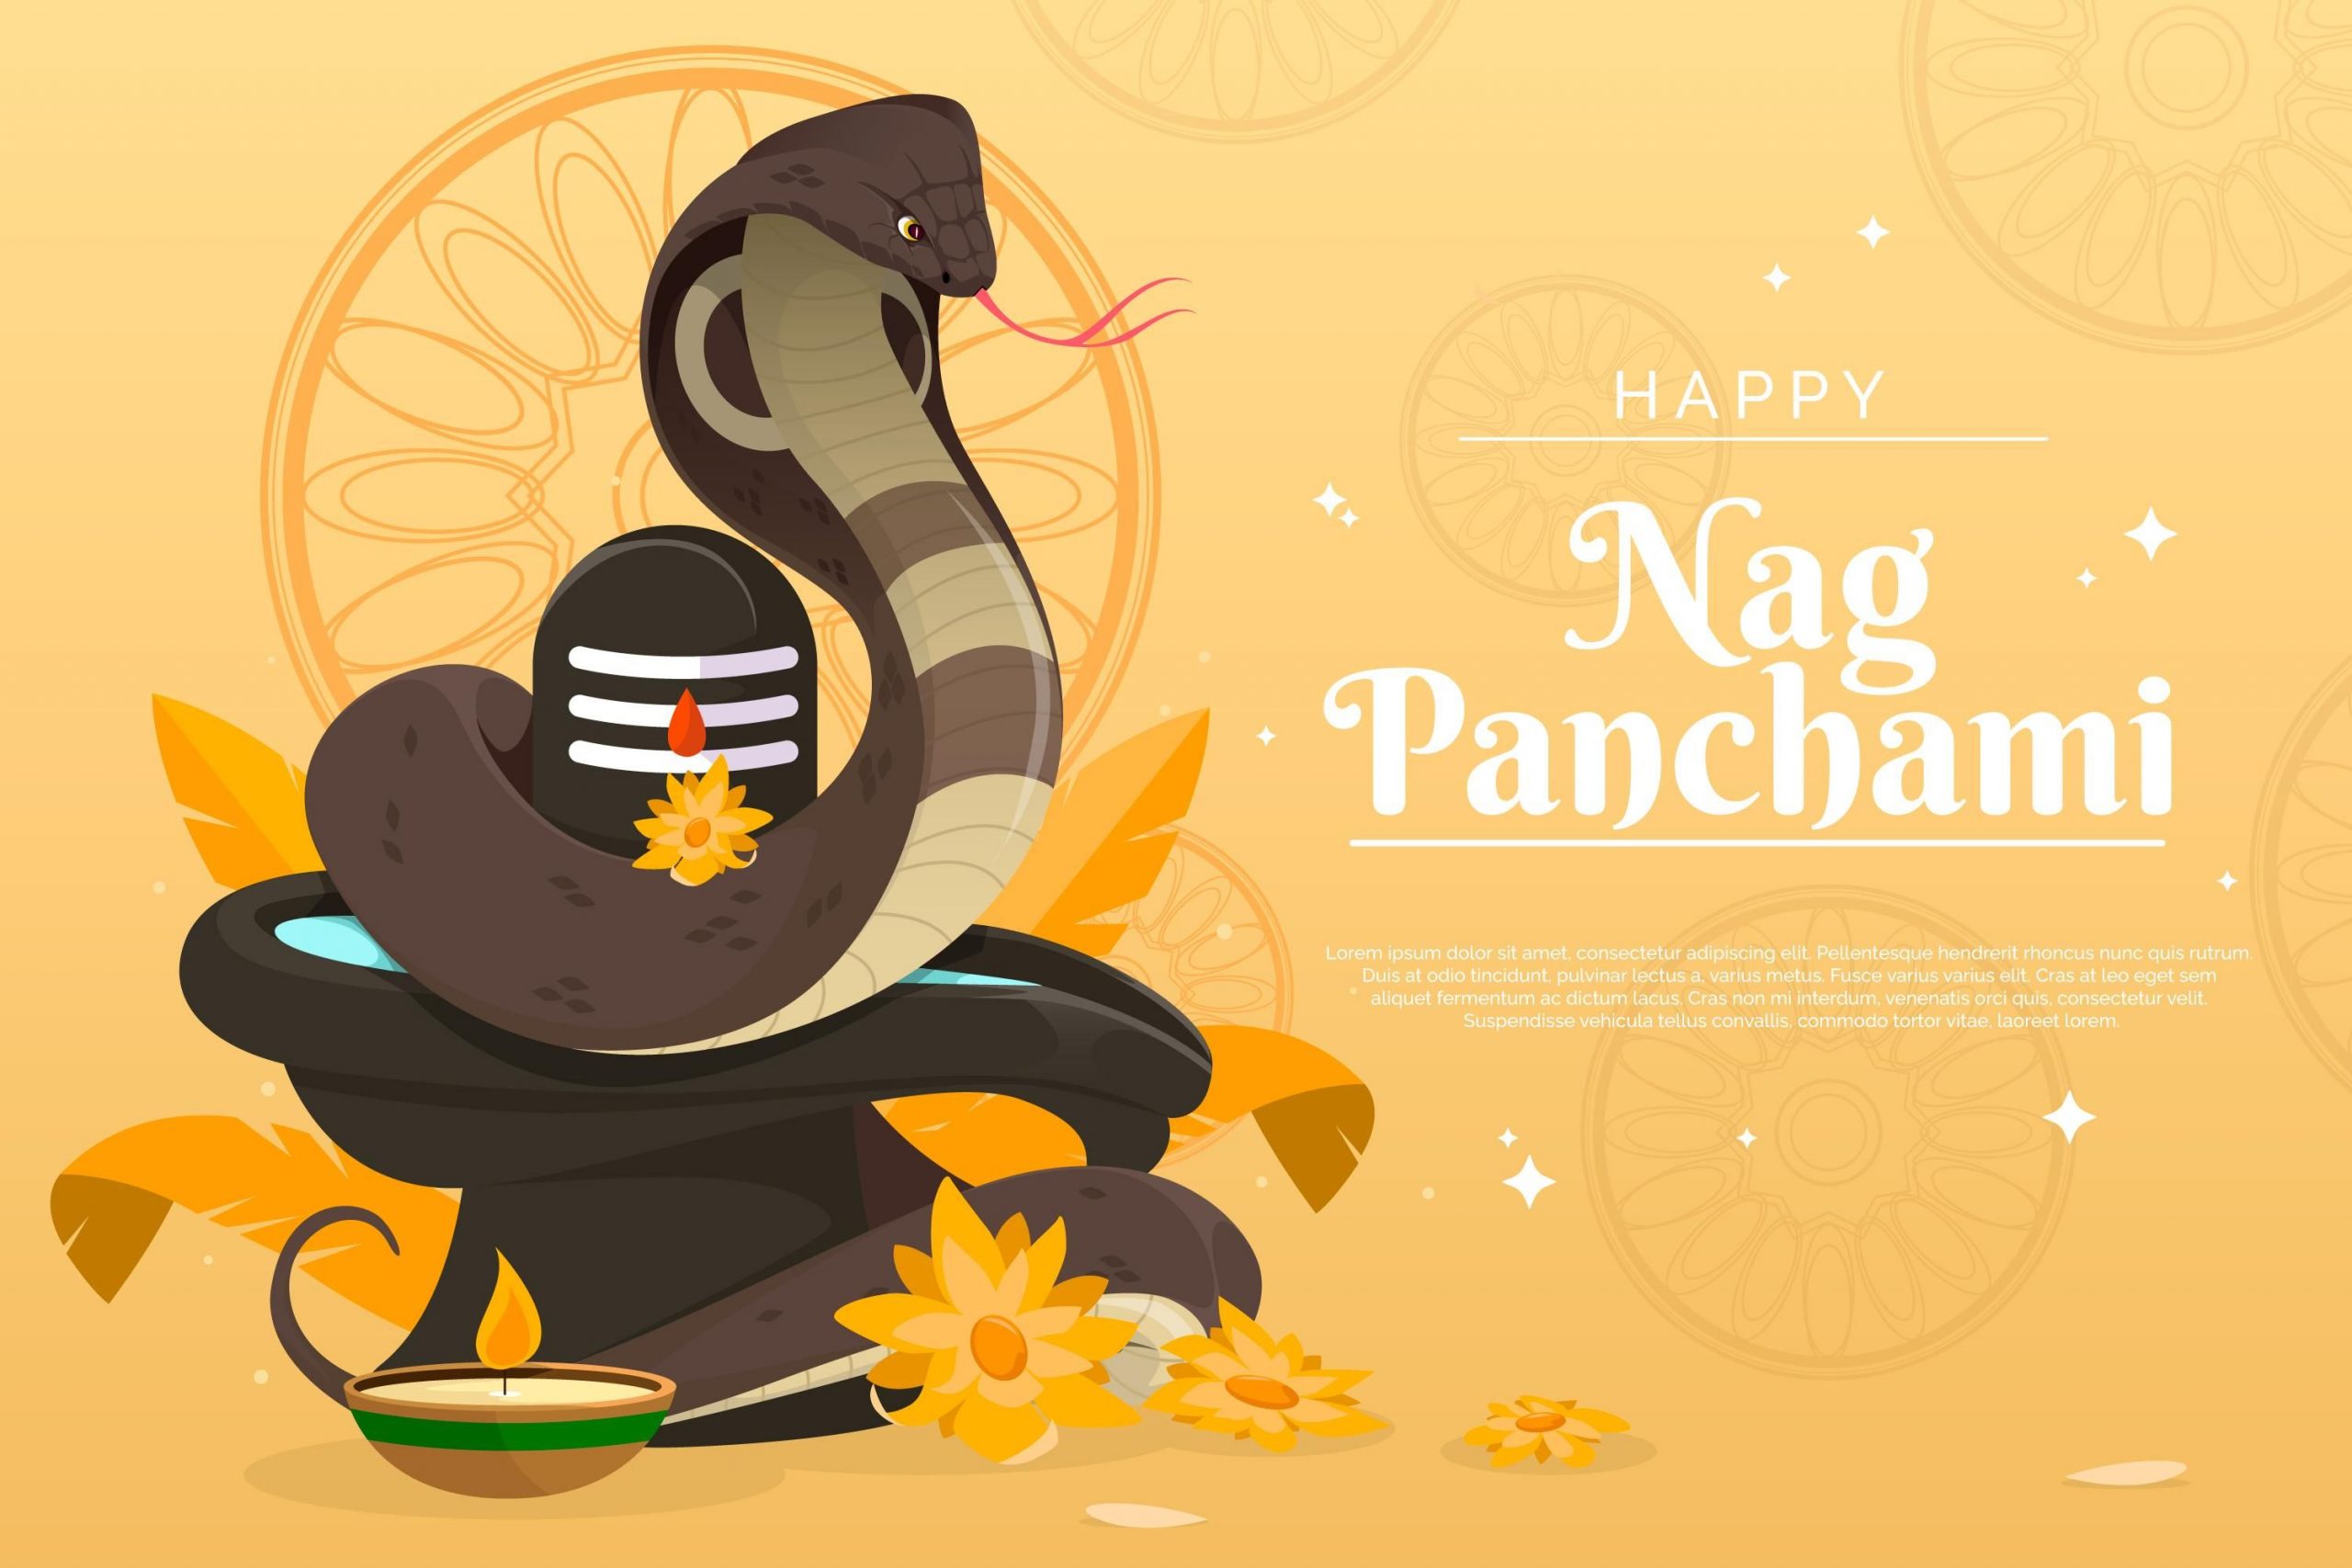 Happy Nag Panchami 2022 Wishes, Messages, Quotes: नाग पंचमी पर प्रियजनों को भेजें शुभकामनाएं संदेश